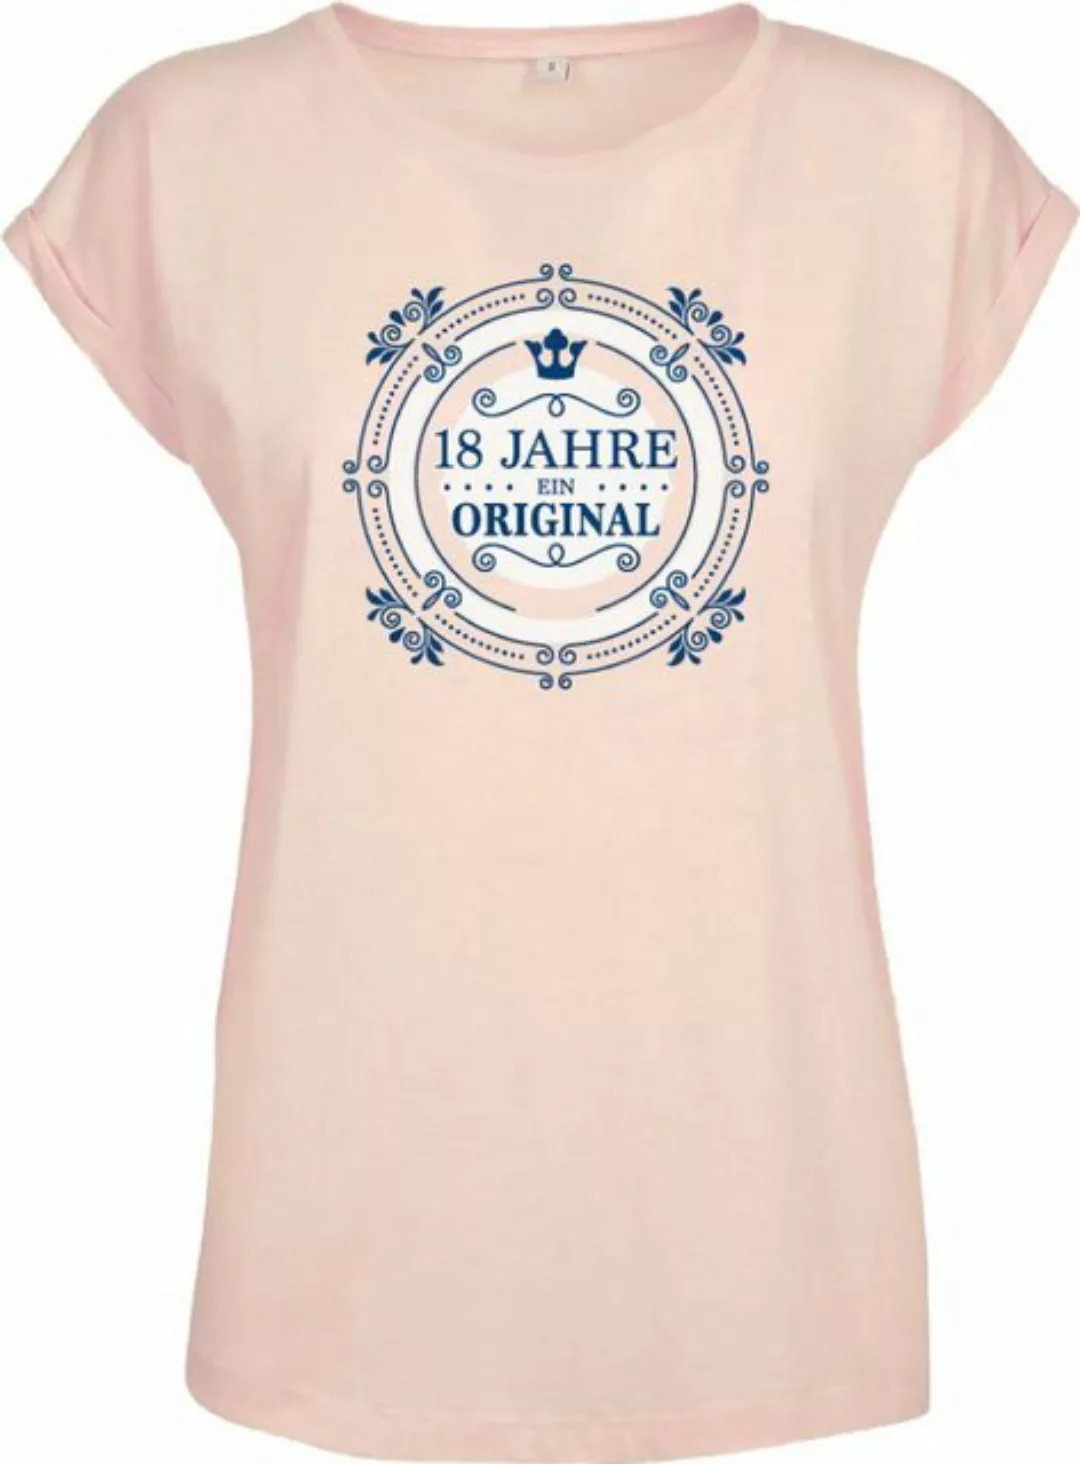 Baddery Print-Shirt Geburtstagsgeschenk für Frauen : 18 Jahre Ein Original günstig online kaufen